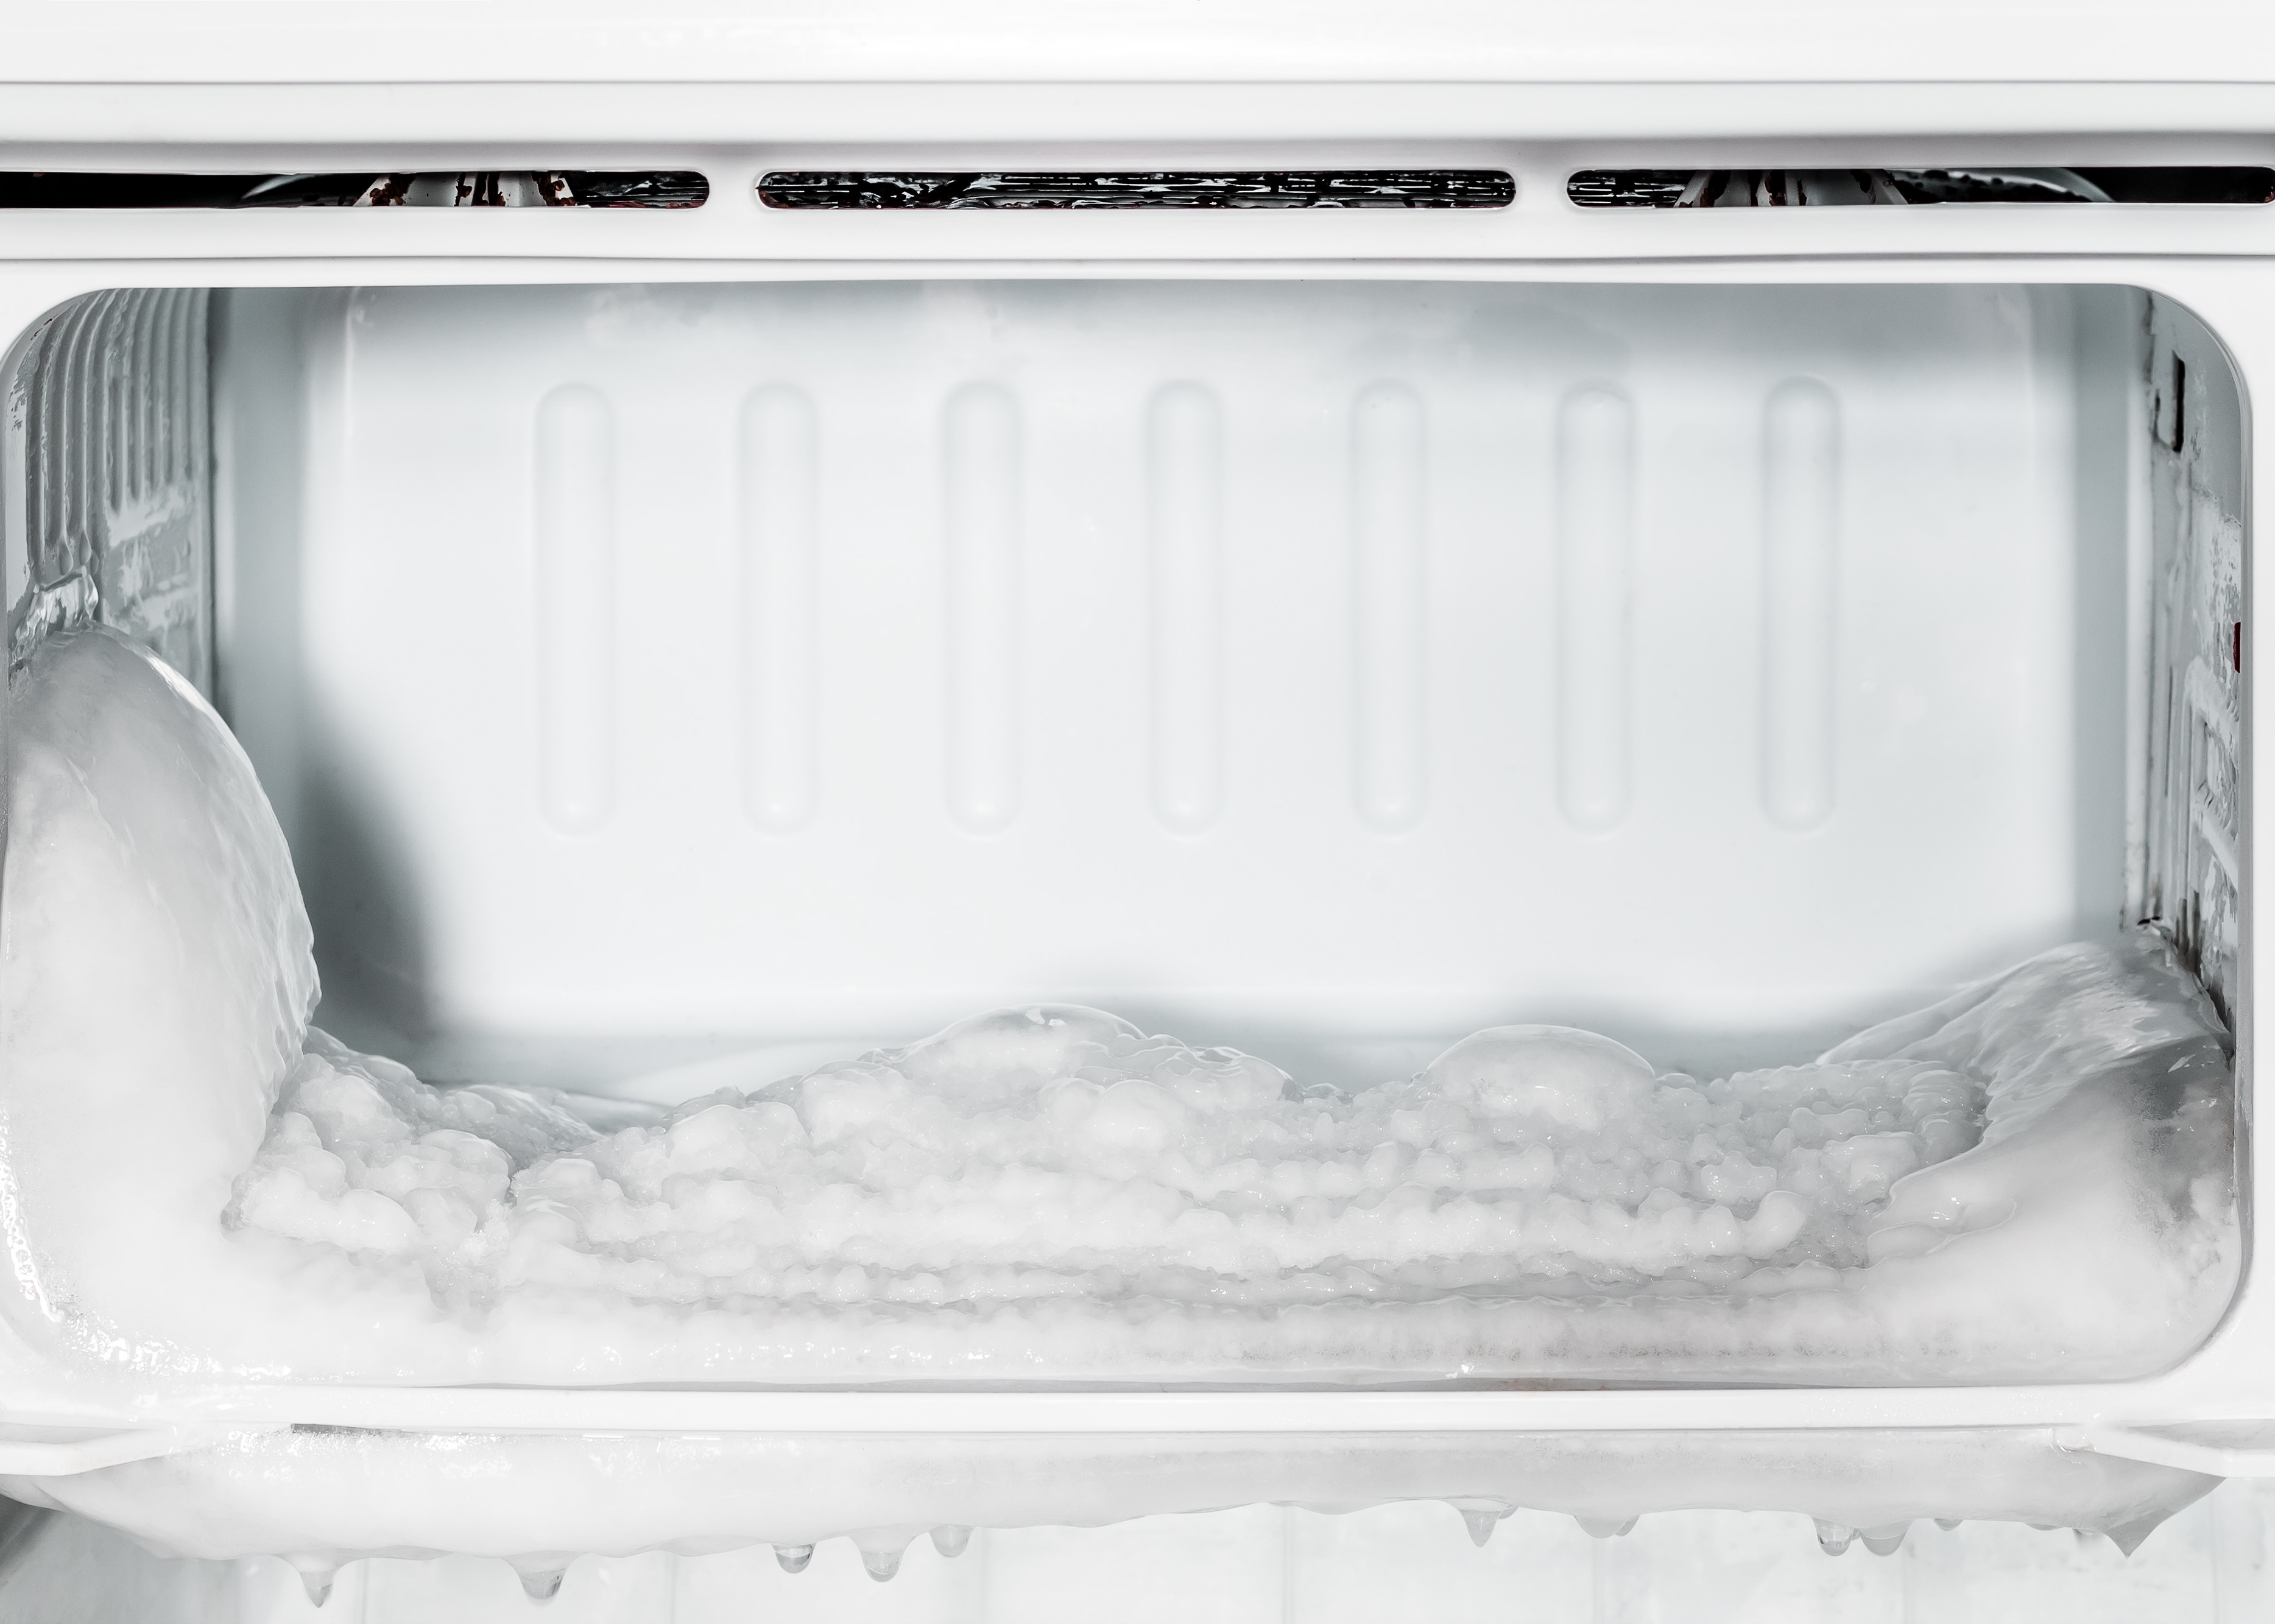 Avrim fryseren, hold rett temperatur og organiser fryseren riktig - Elkjøp